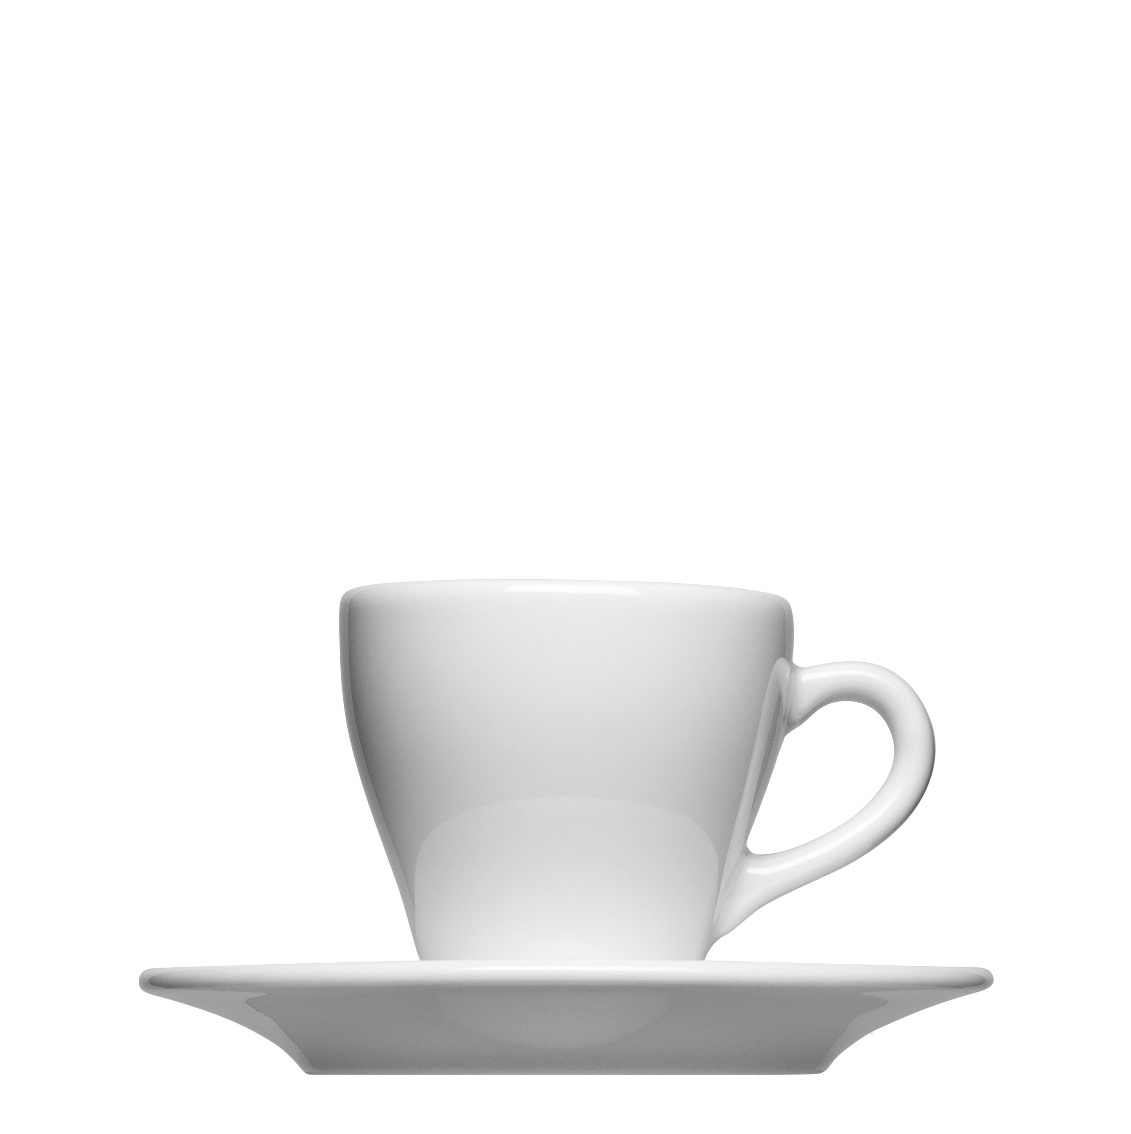 Espressotasse Form 562 zum bedrucken mit einem Logo oder einer Grafik als Werbegeschenk, Werbeartikel oder Werbemittel